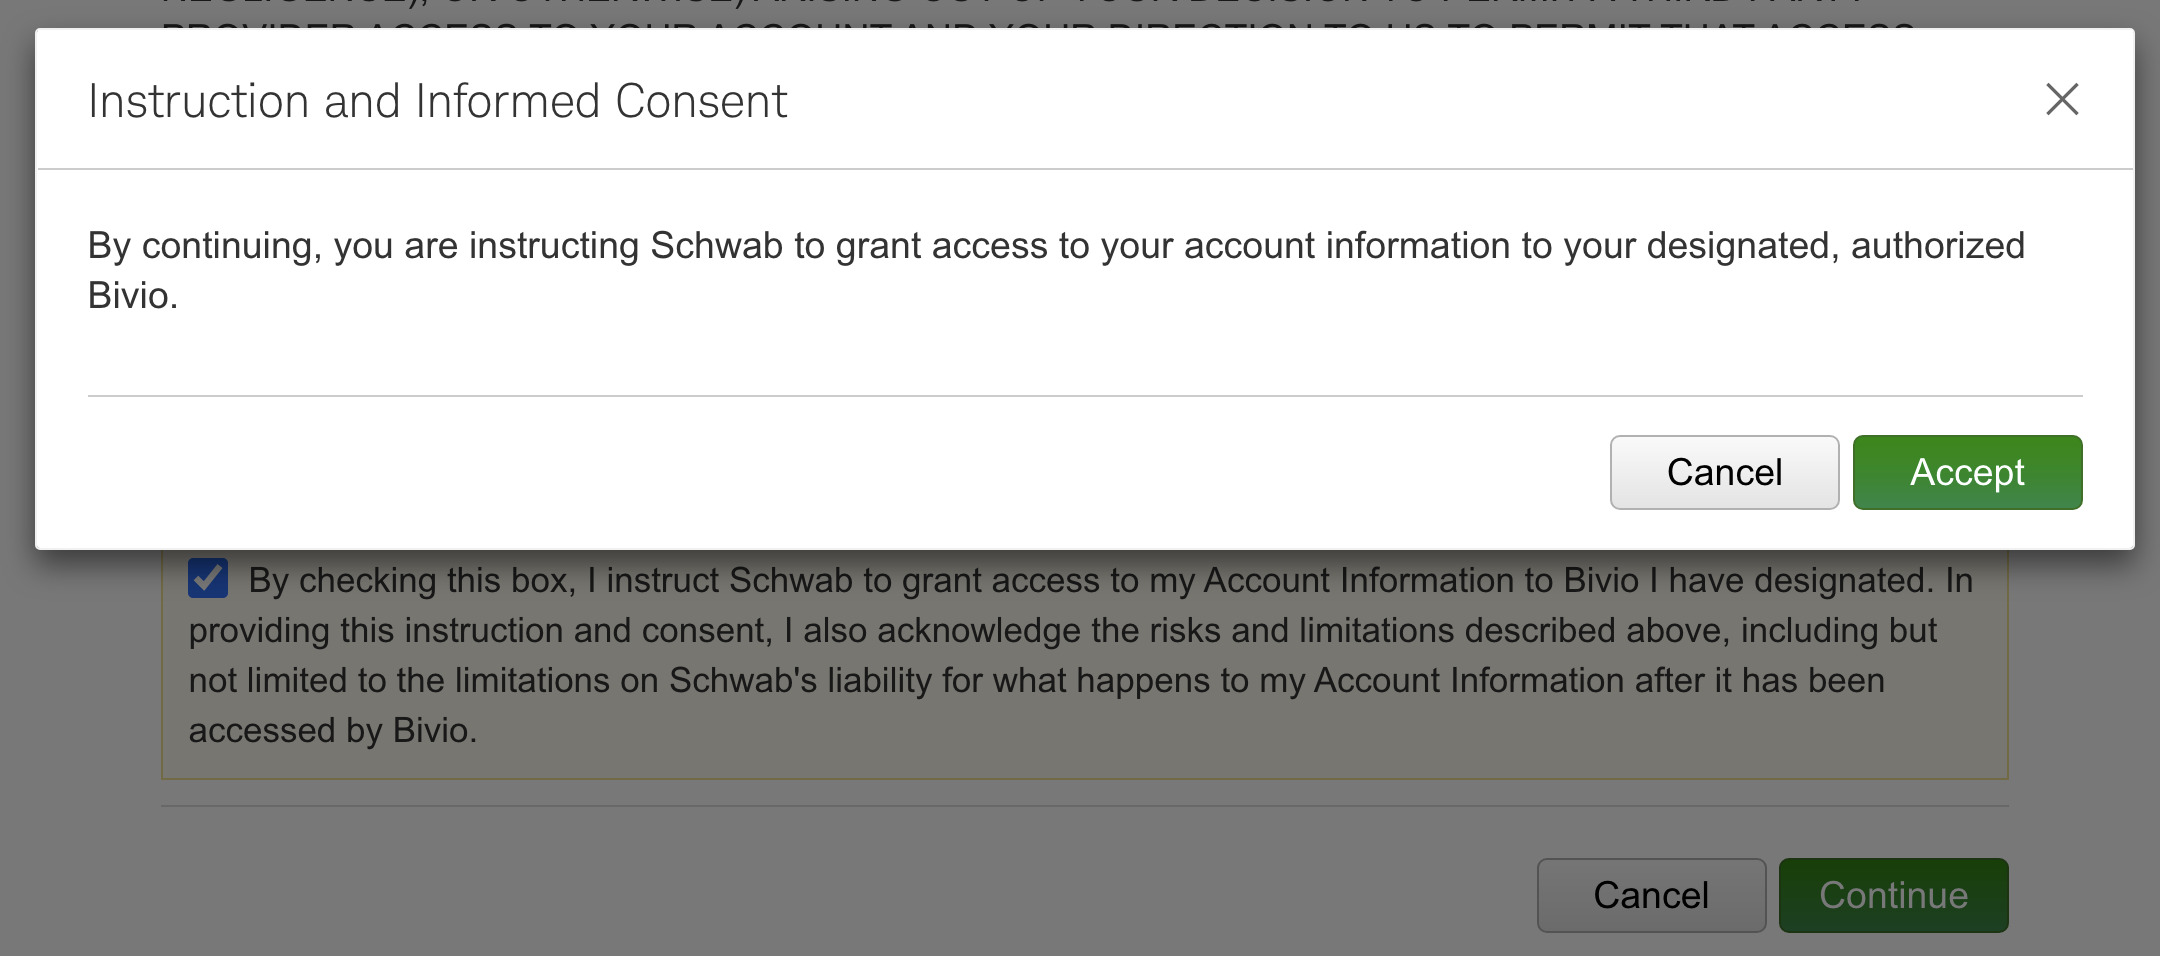 Schwab-08-Consent-Accept.jpg